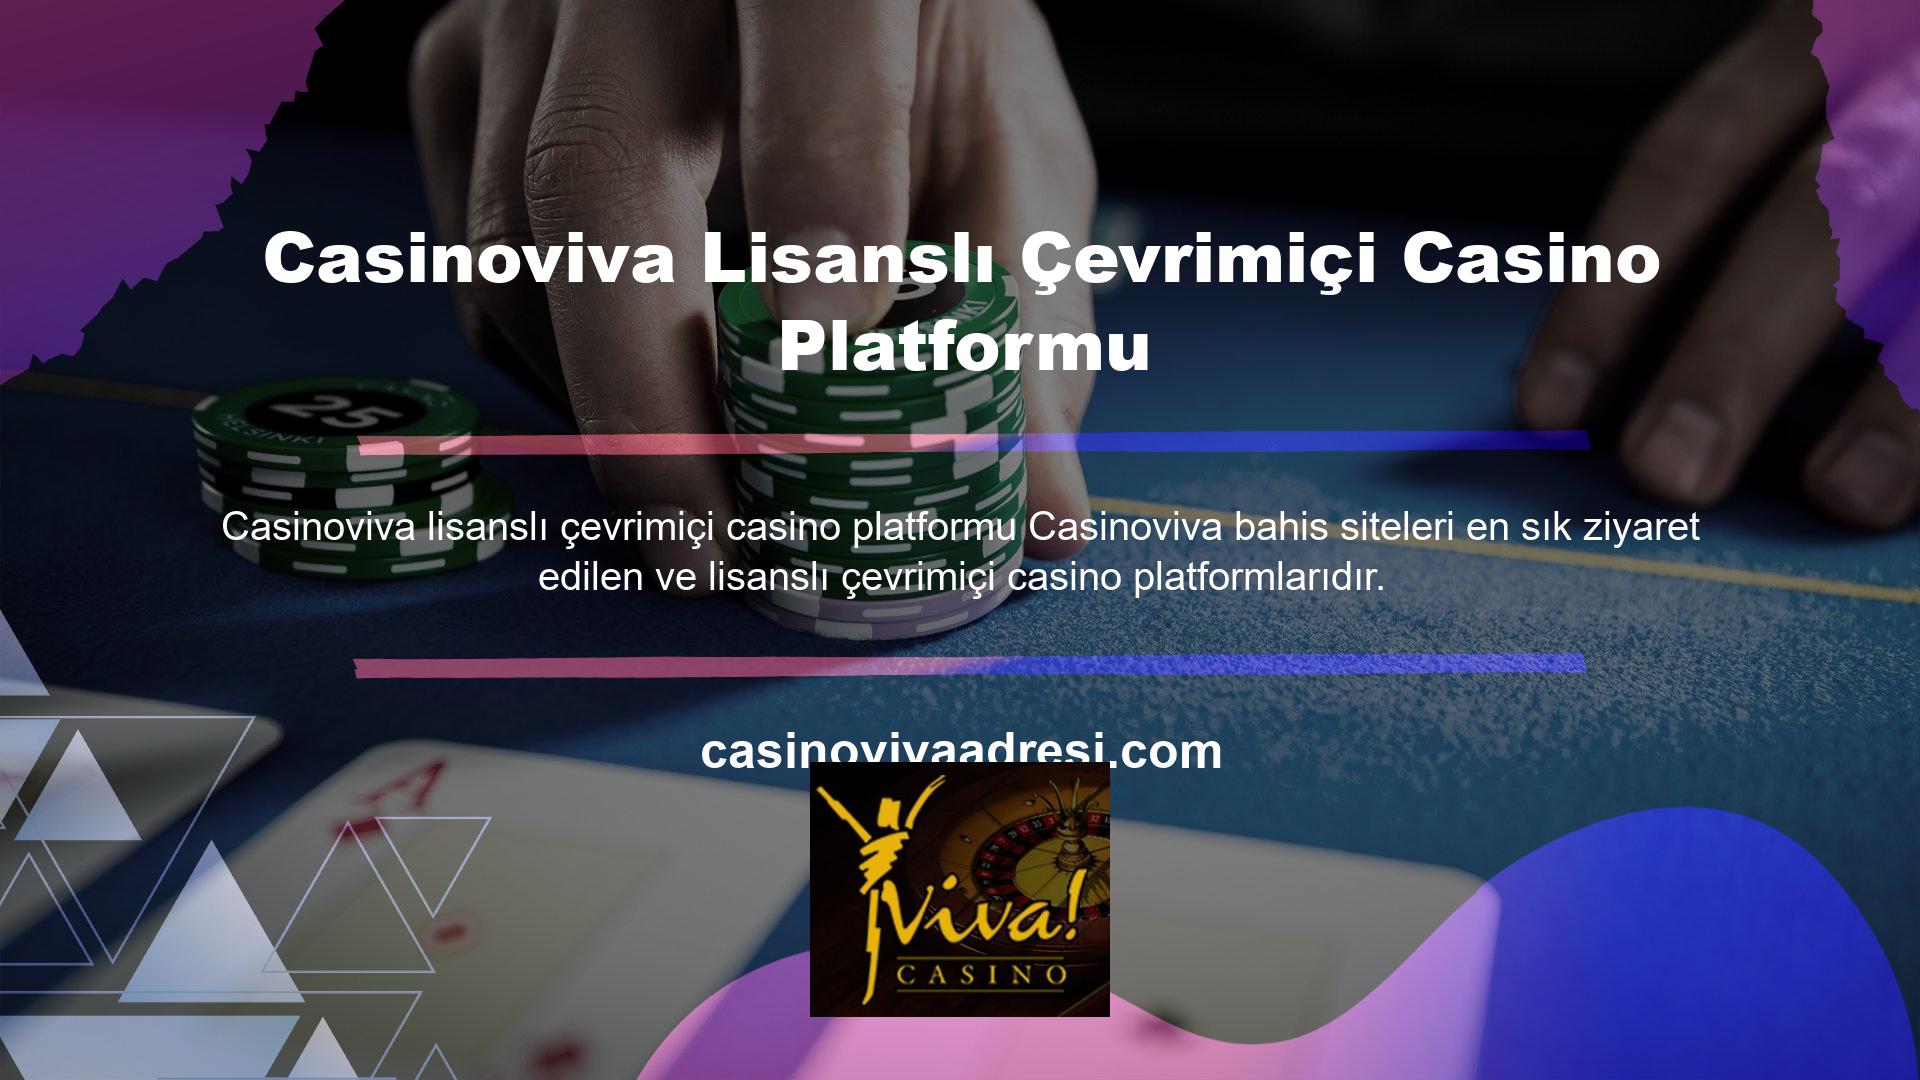 Çevrimiçi casino meraklıları bu bahis sitesinin canlı ve renkli tasarımını benimsemiştir